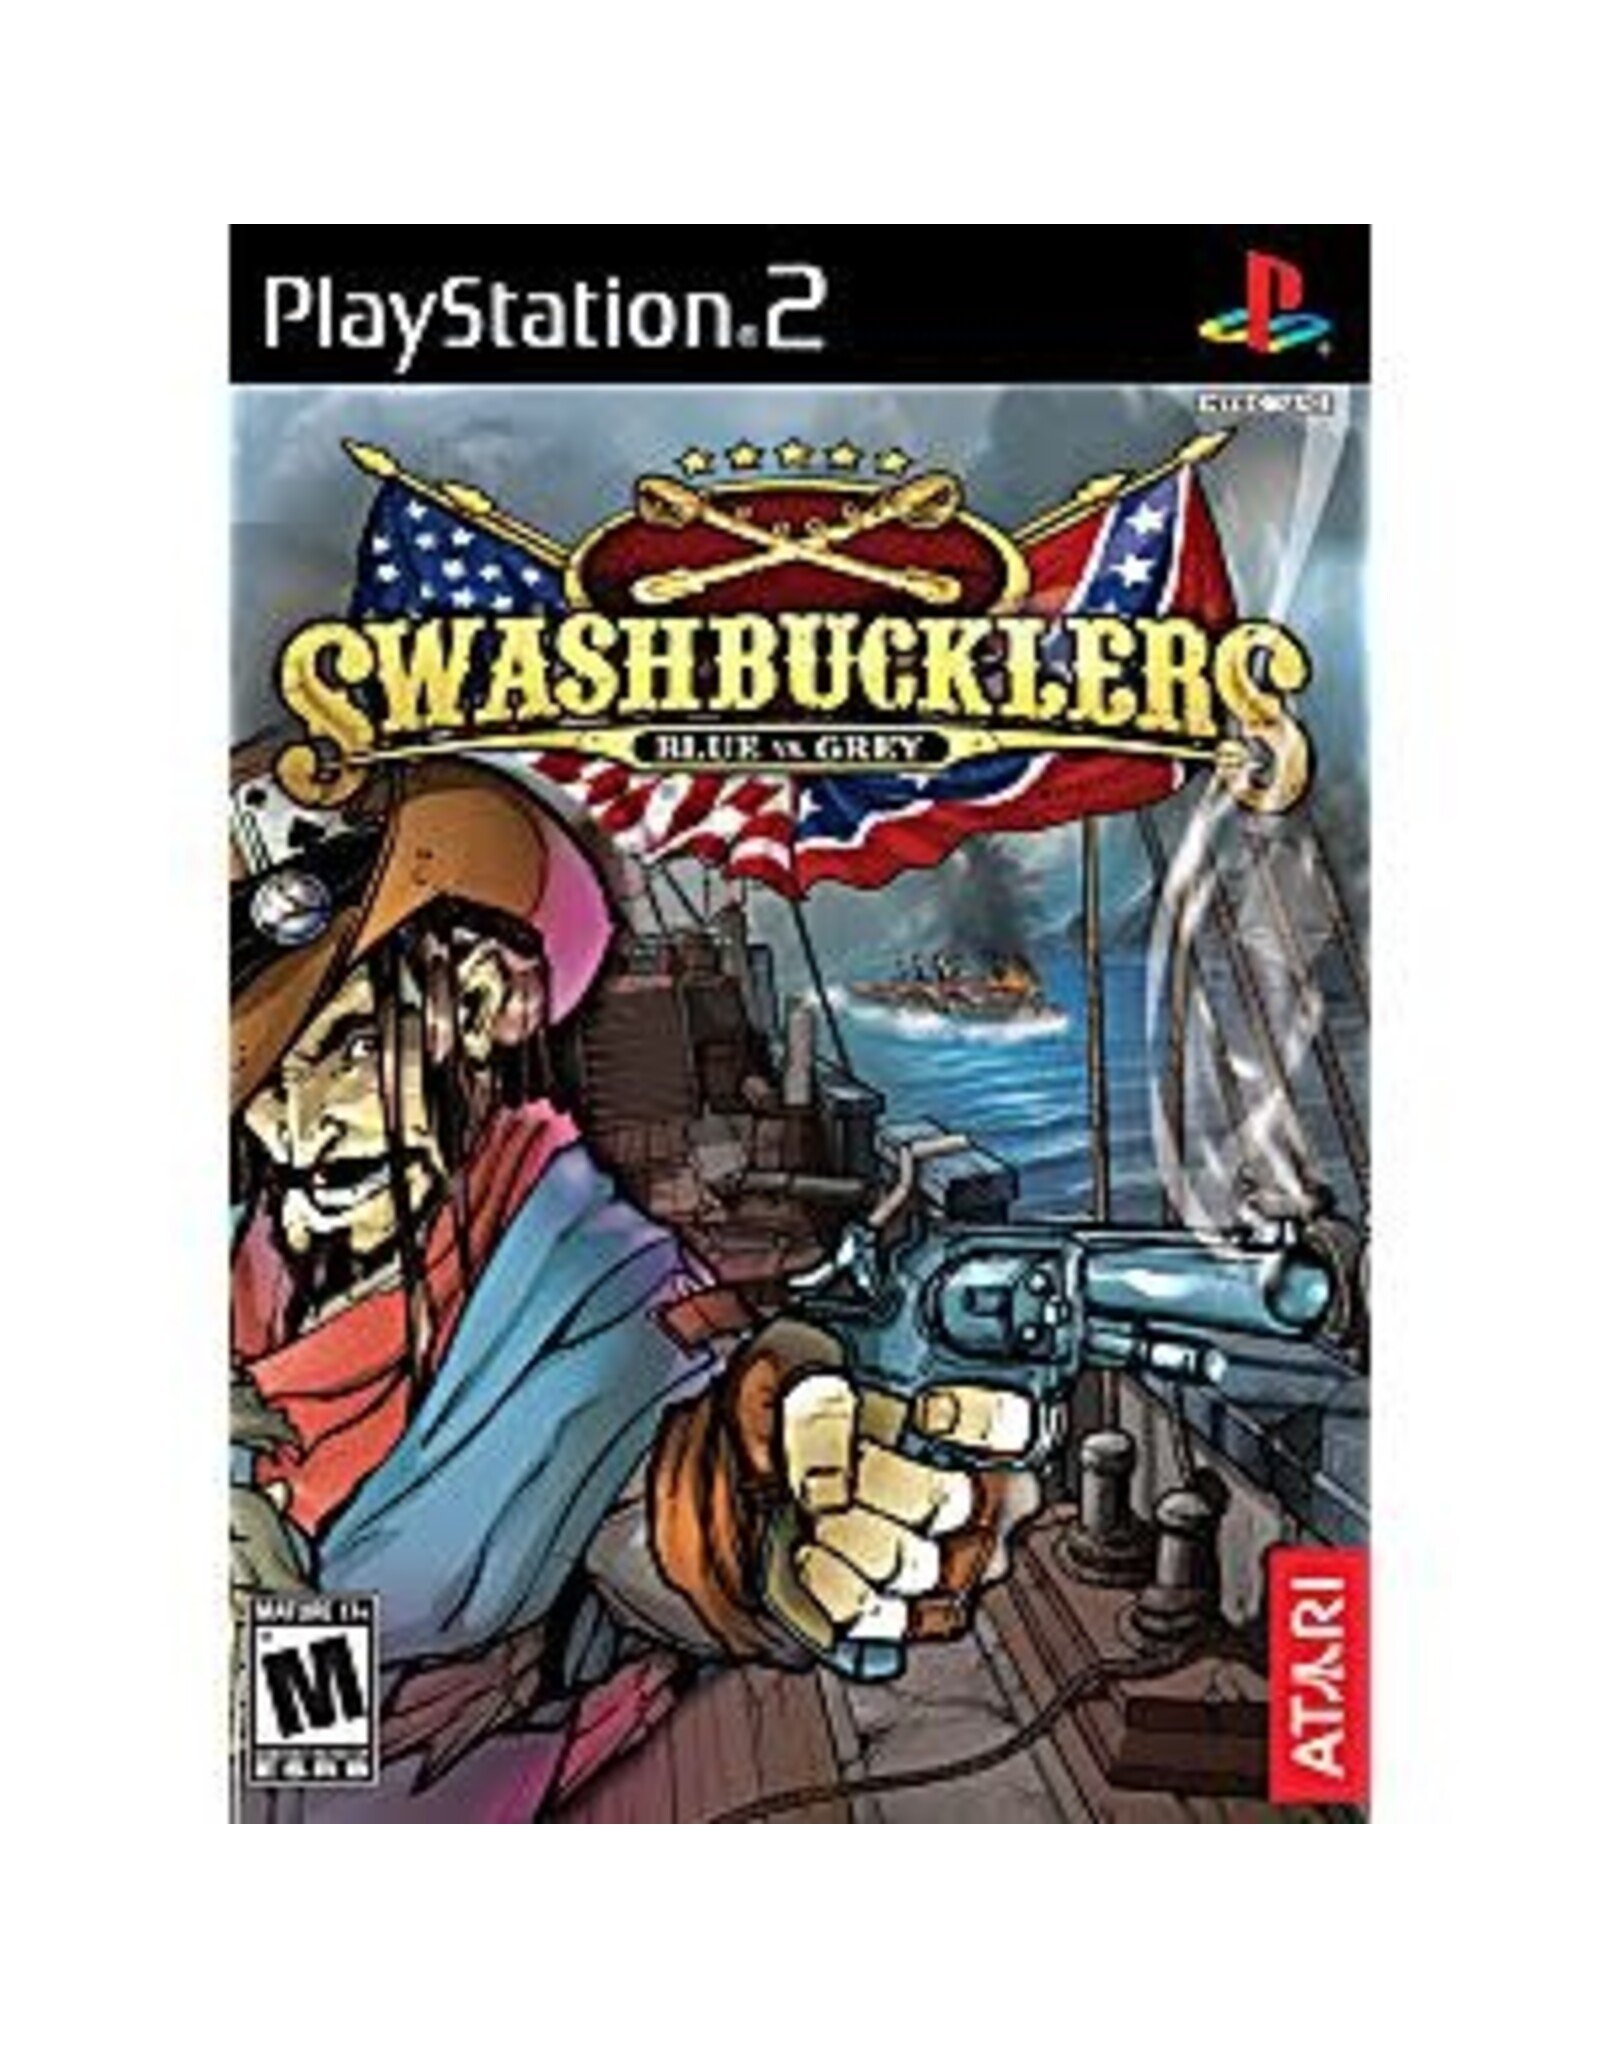 Playstation 2 Swashbucklers (No Manual)